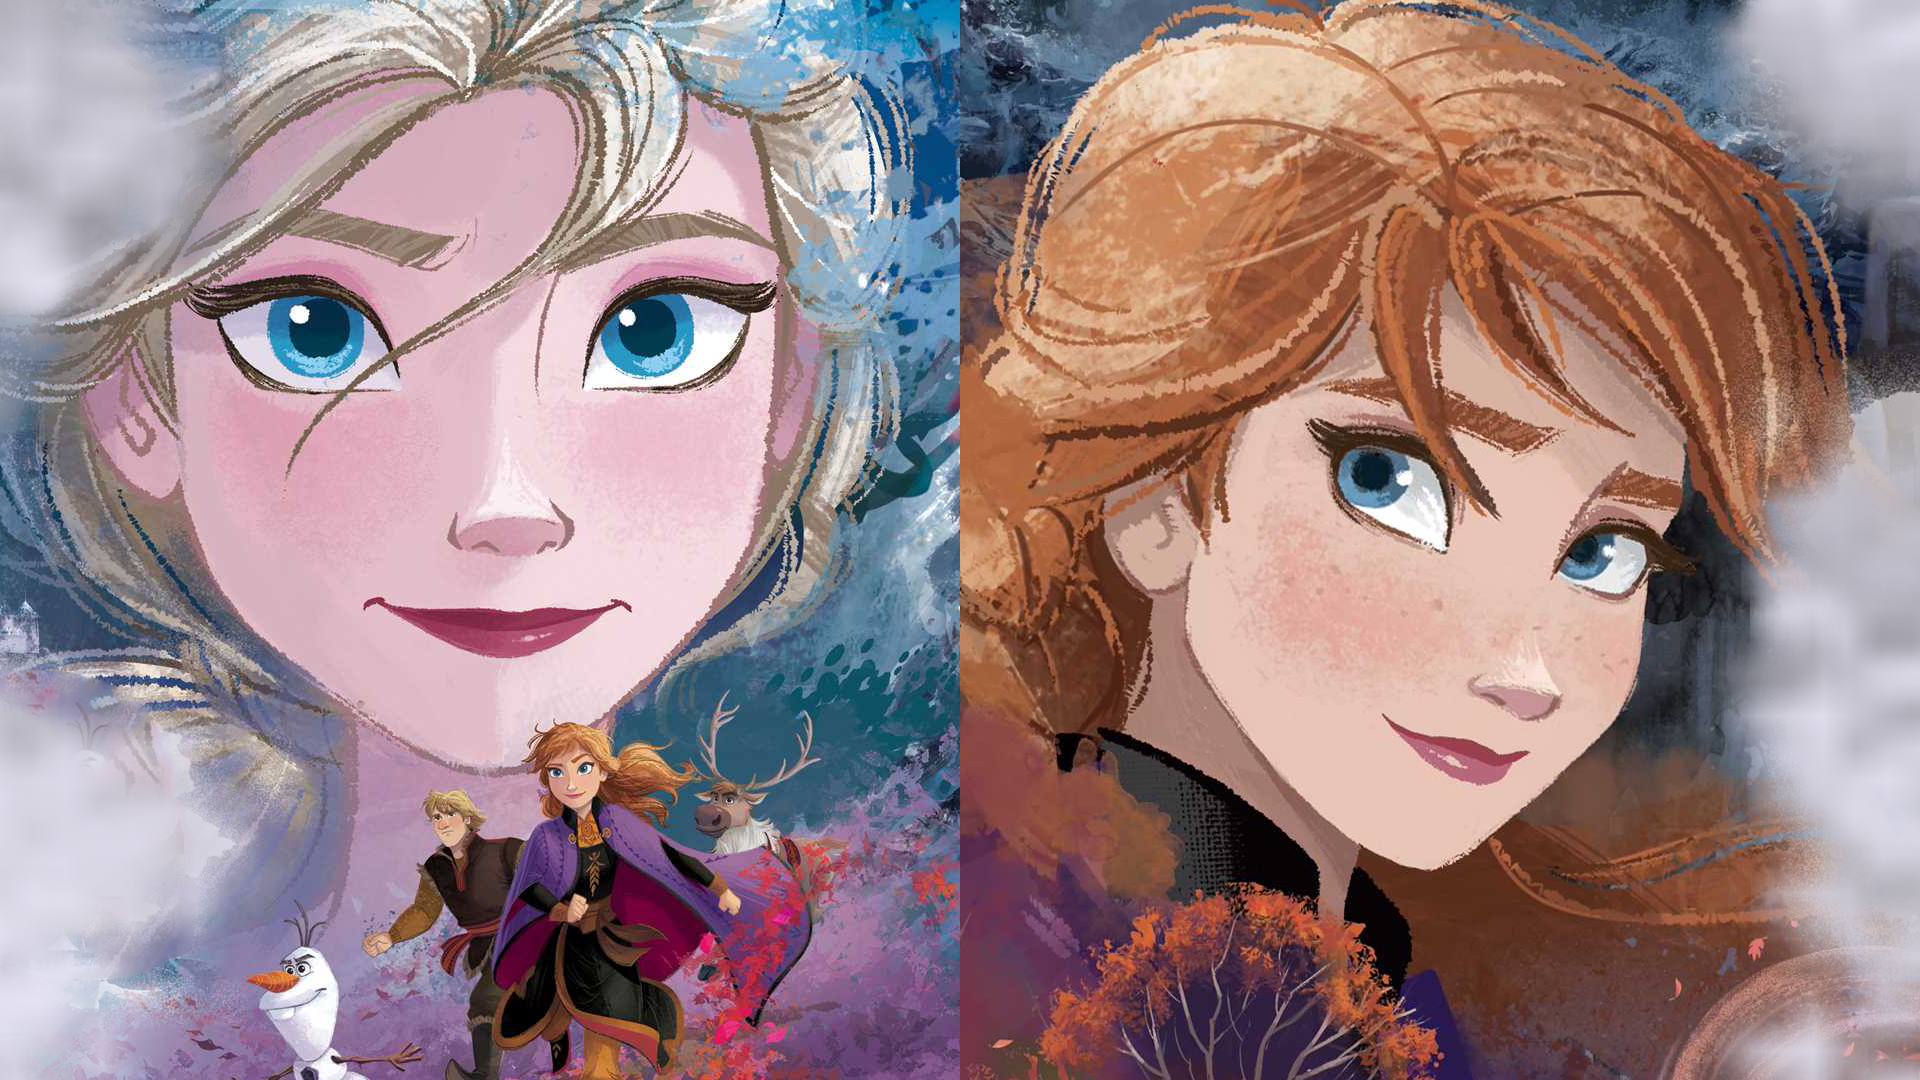 Frozen II Wallpapers - Top Free Frozen II Backgrounds - WallpaperAccess |  Frozen 2 wallpaper, Frozen wallpaper, Disney desktop wallpaper